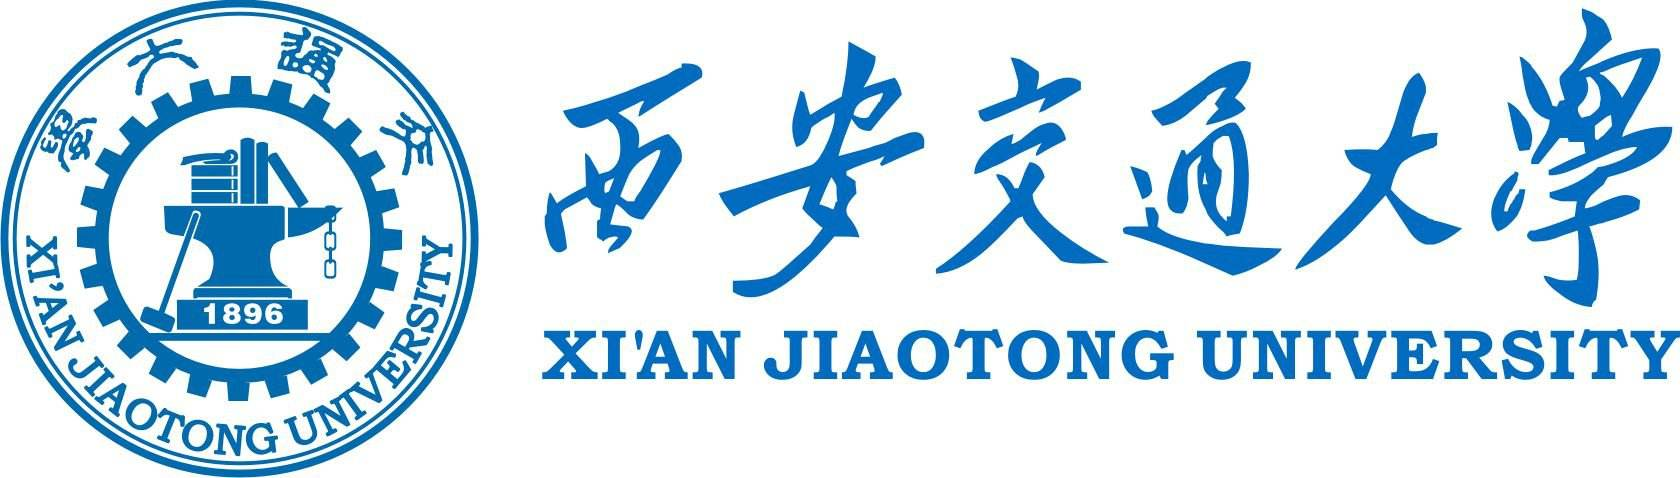 Jiaotong university